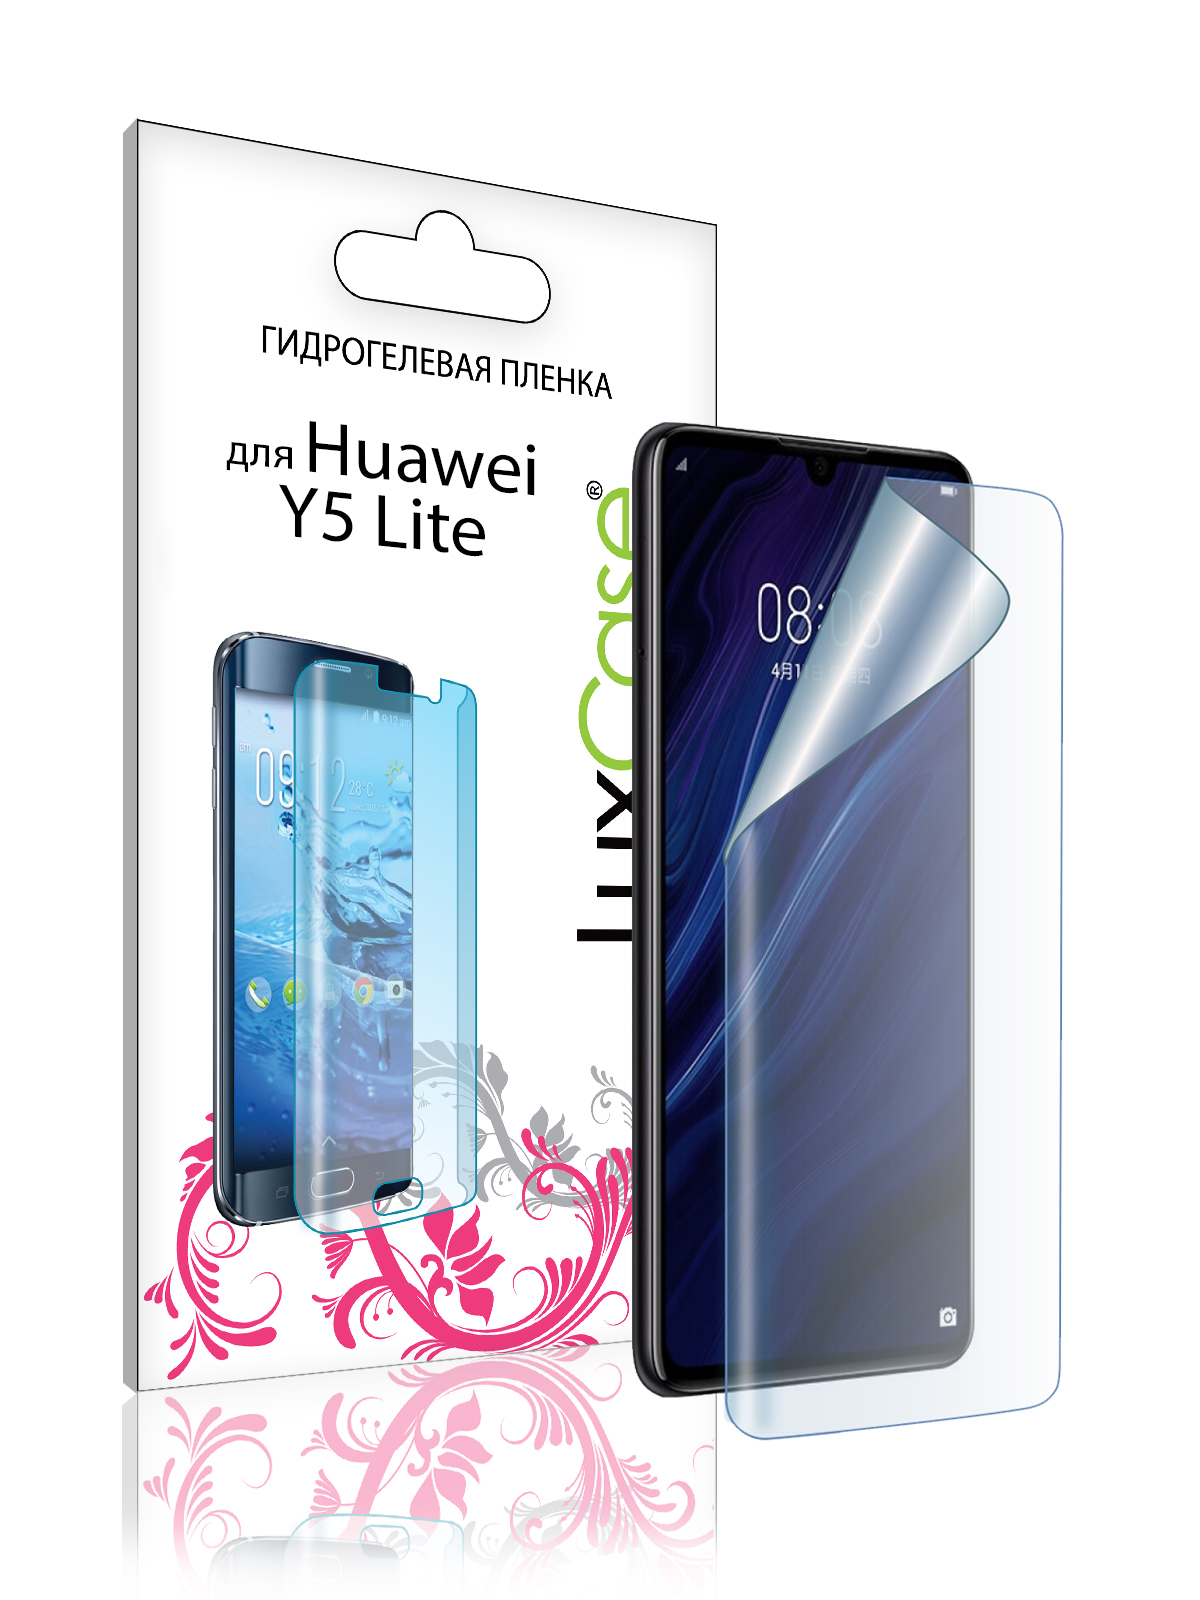 Гидрогелевая пленка LuxCase для Huawei Y5 Lite 0.14mm Front Transperent 86709 гидрогелевая пленка mitrifon для экрана huawei y5 2017 матовая